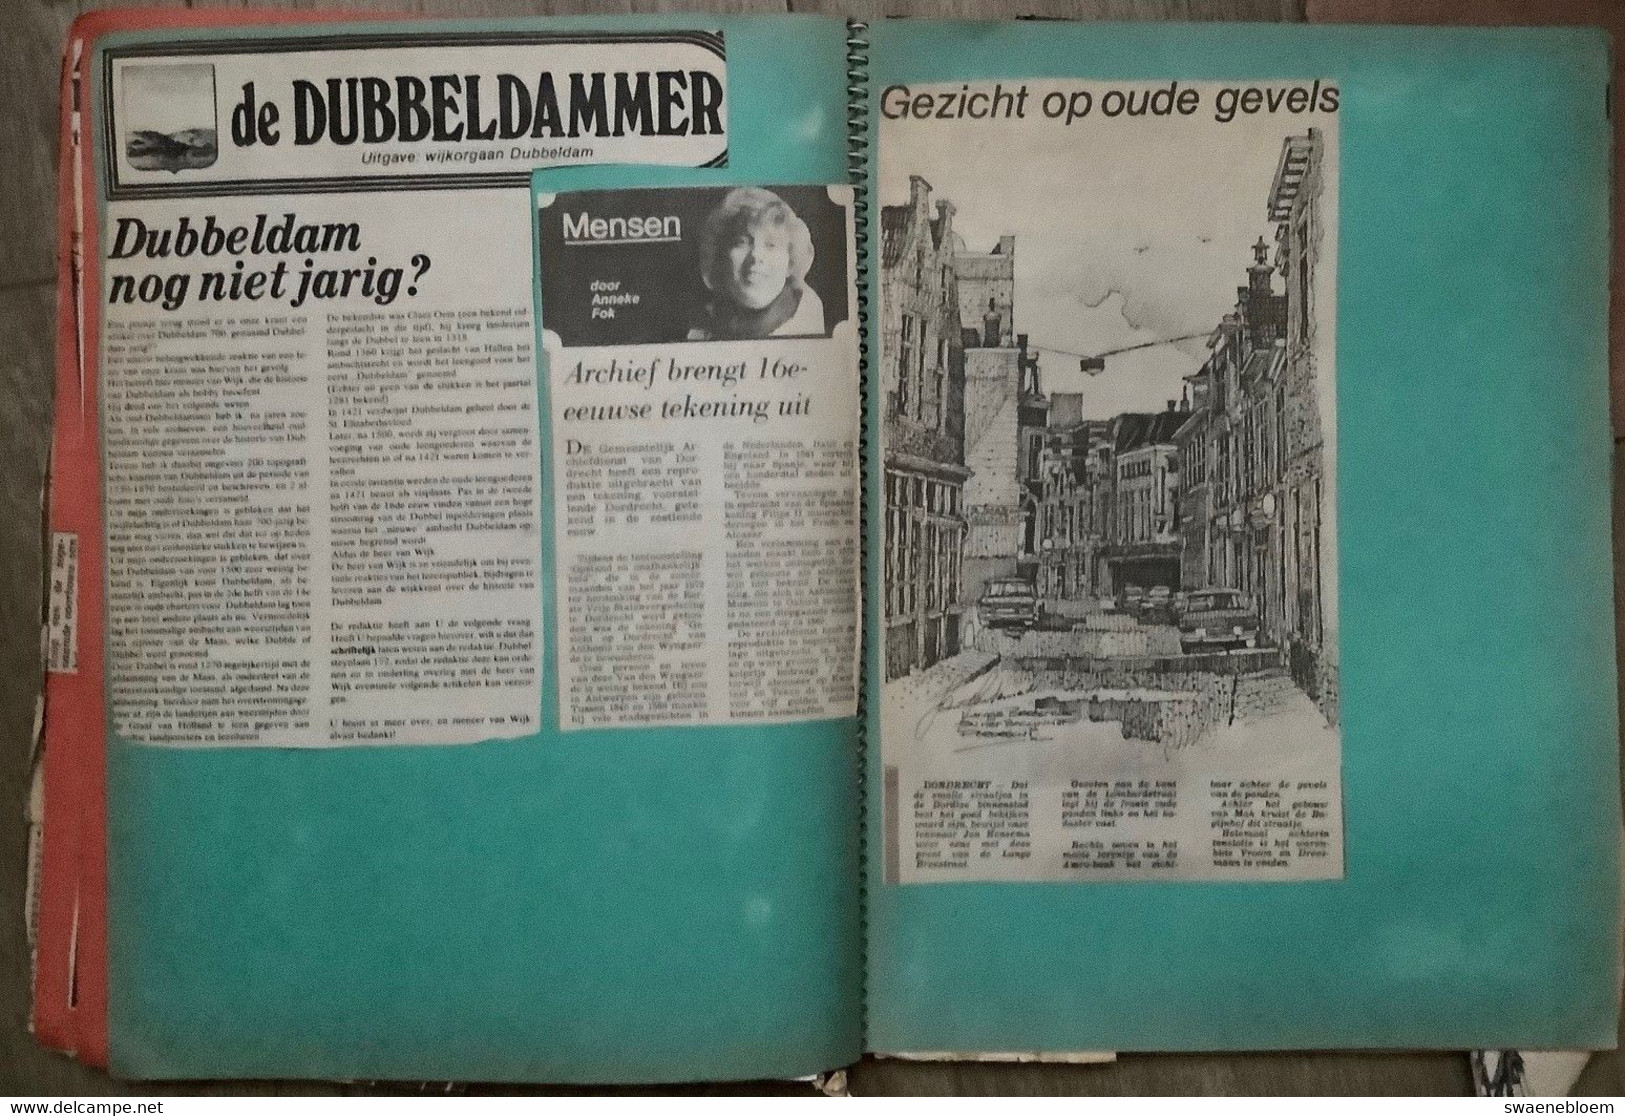 NL.- Drie plakboeken met krantenknipsels van DORDRECHT.